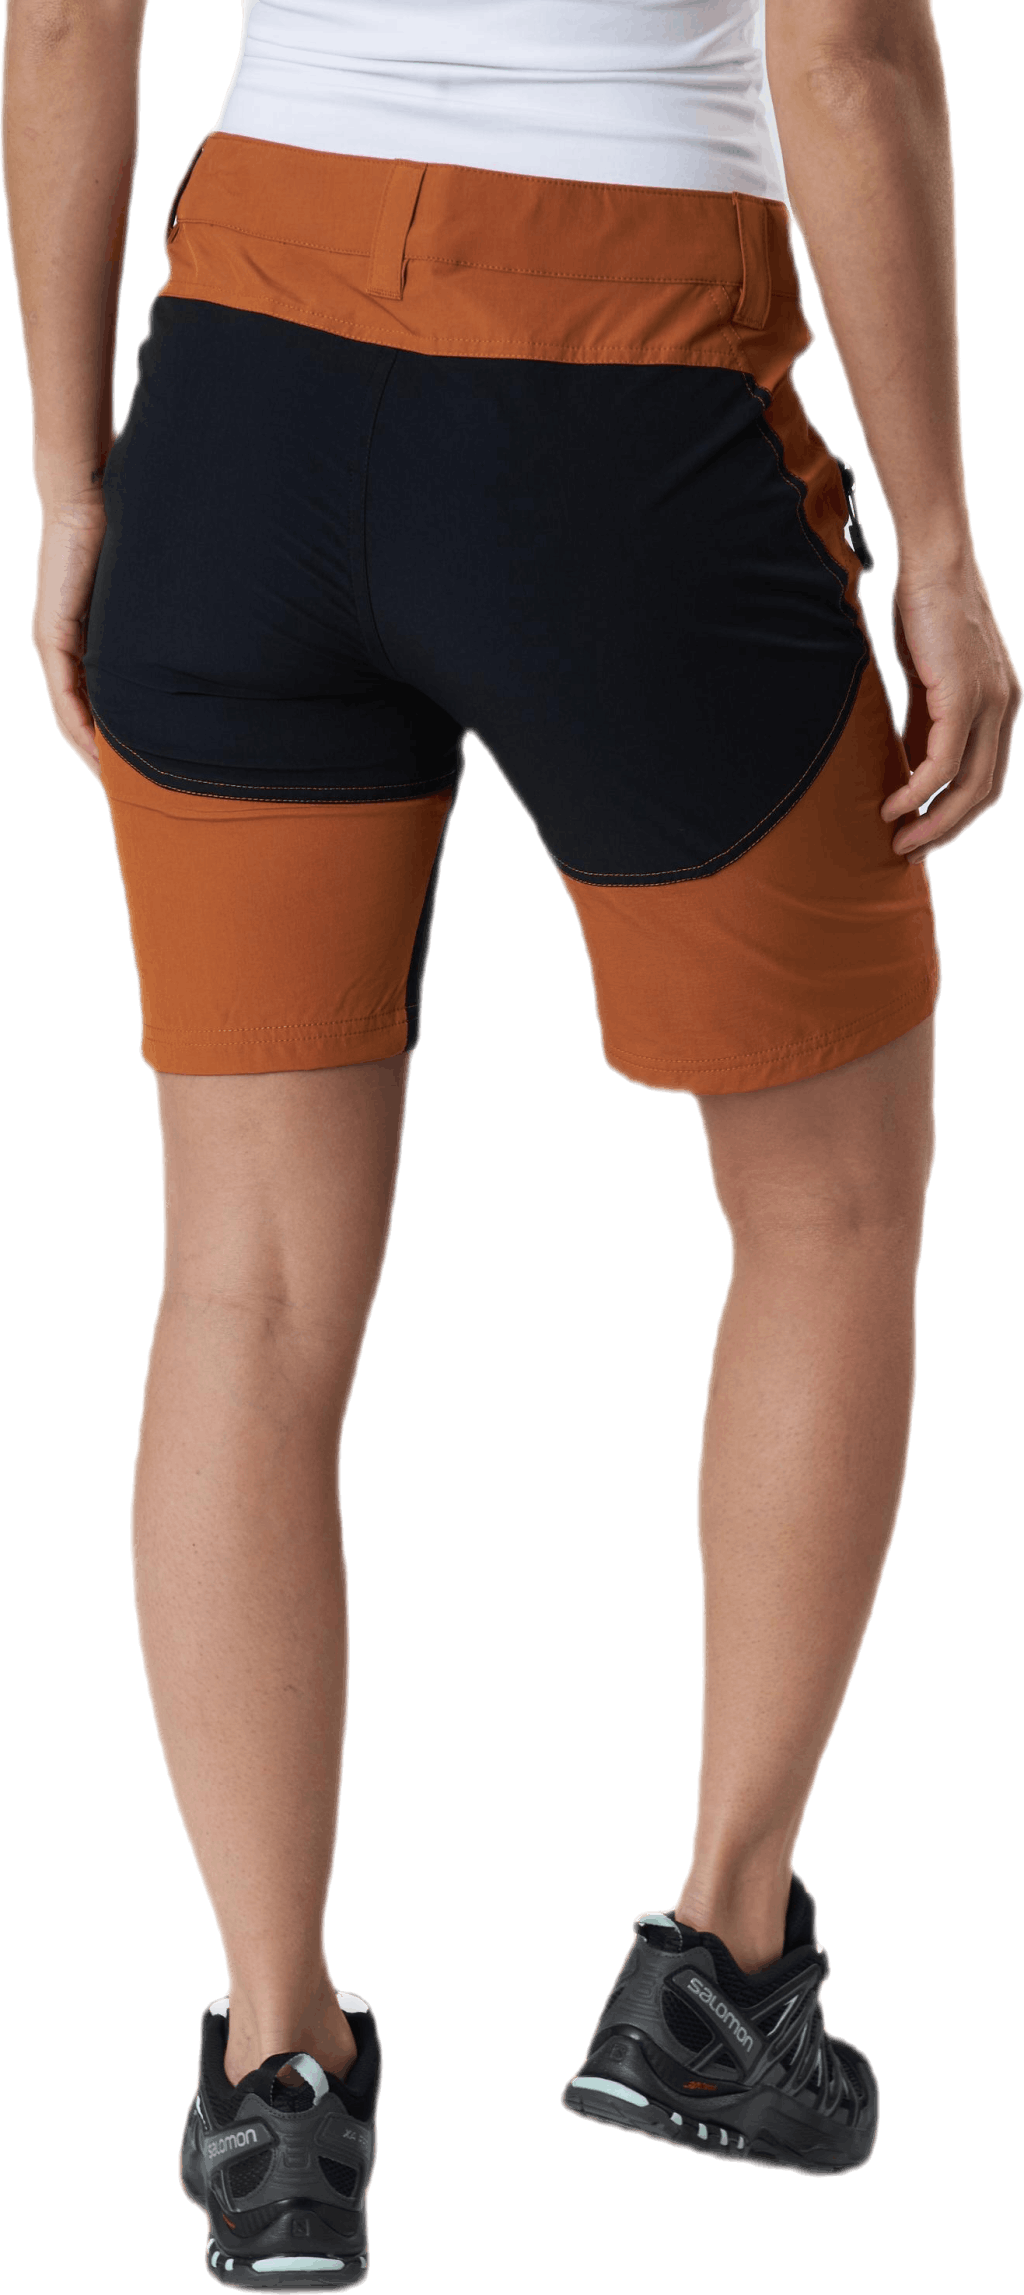 Flexi Lady Shorts Orange